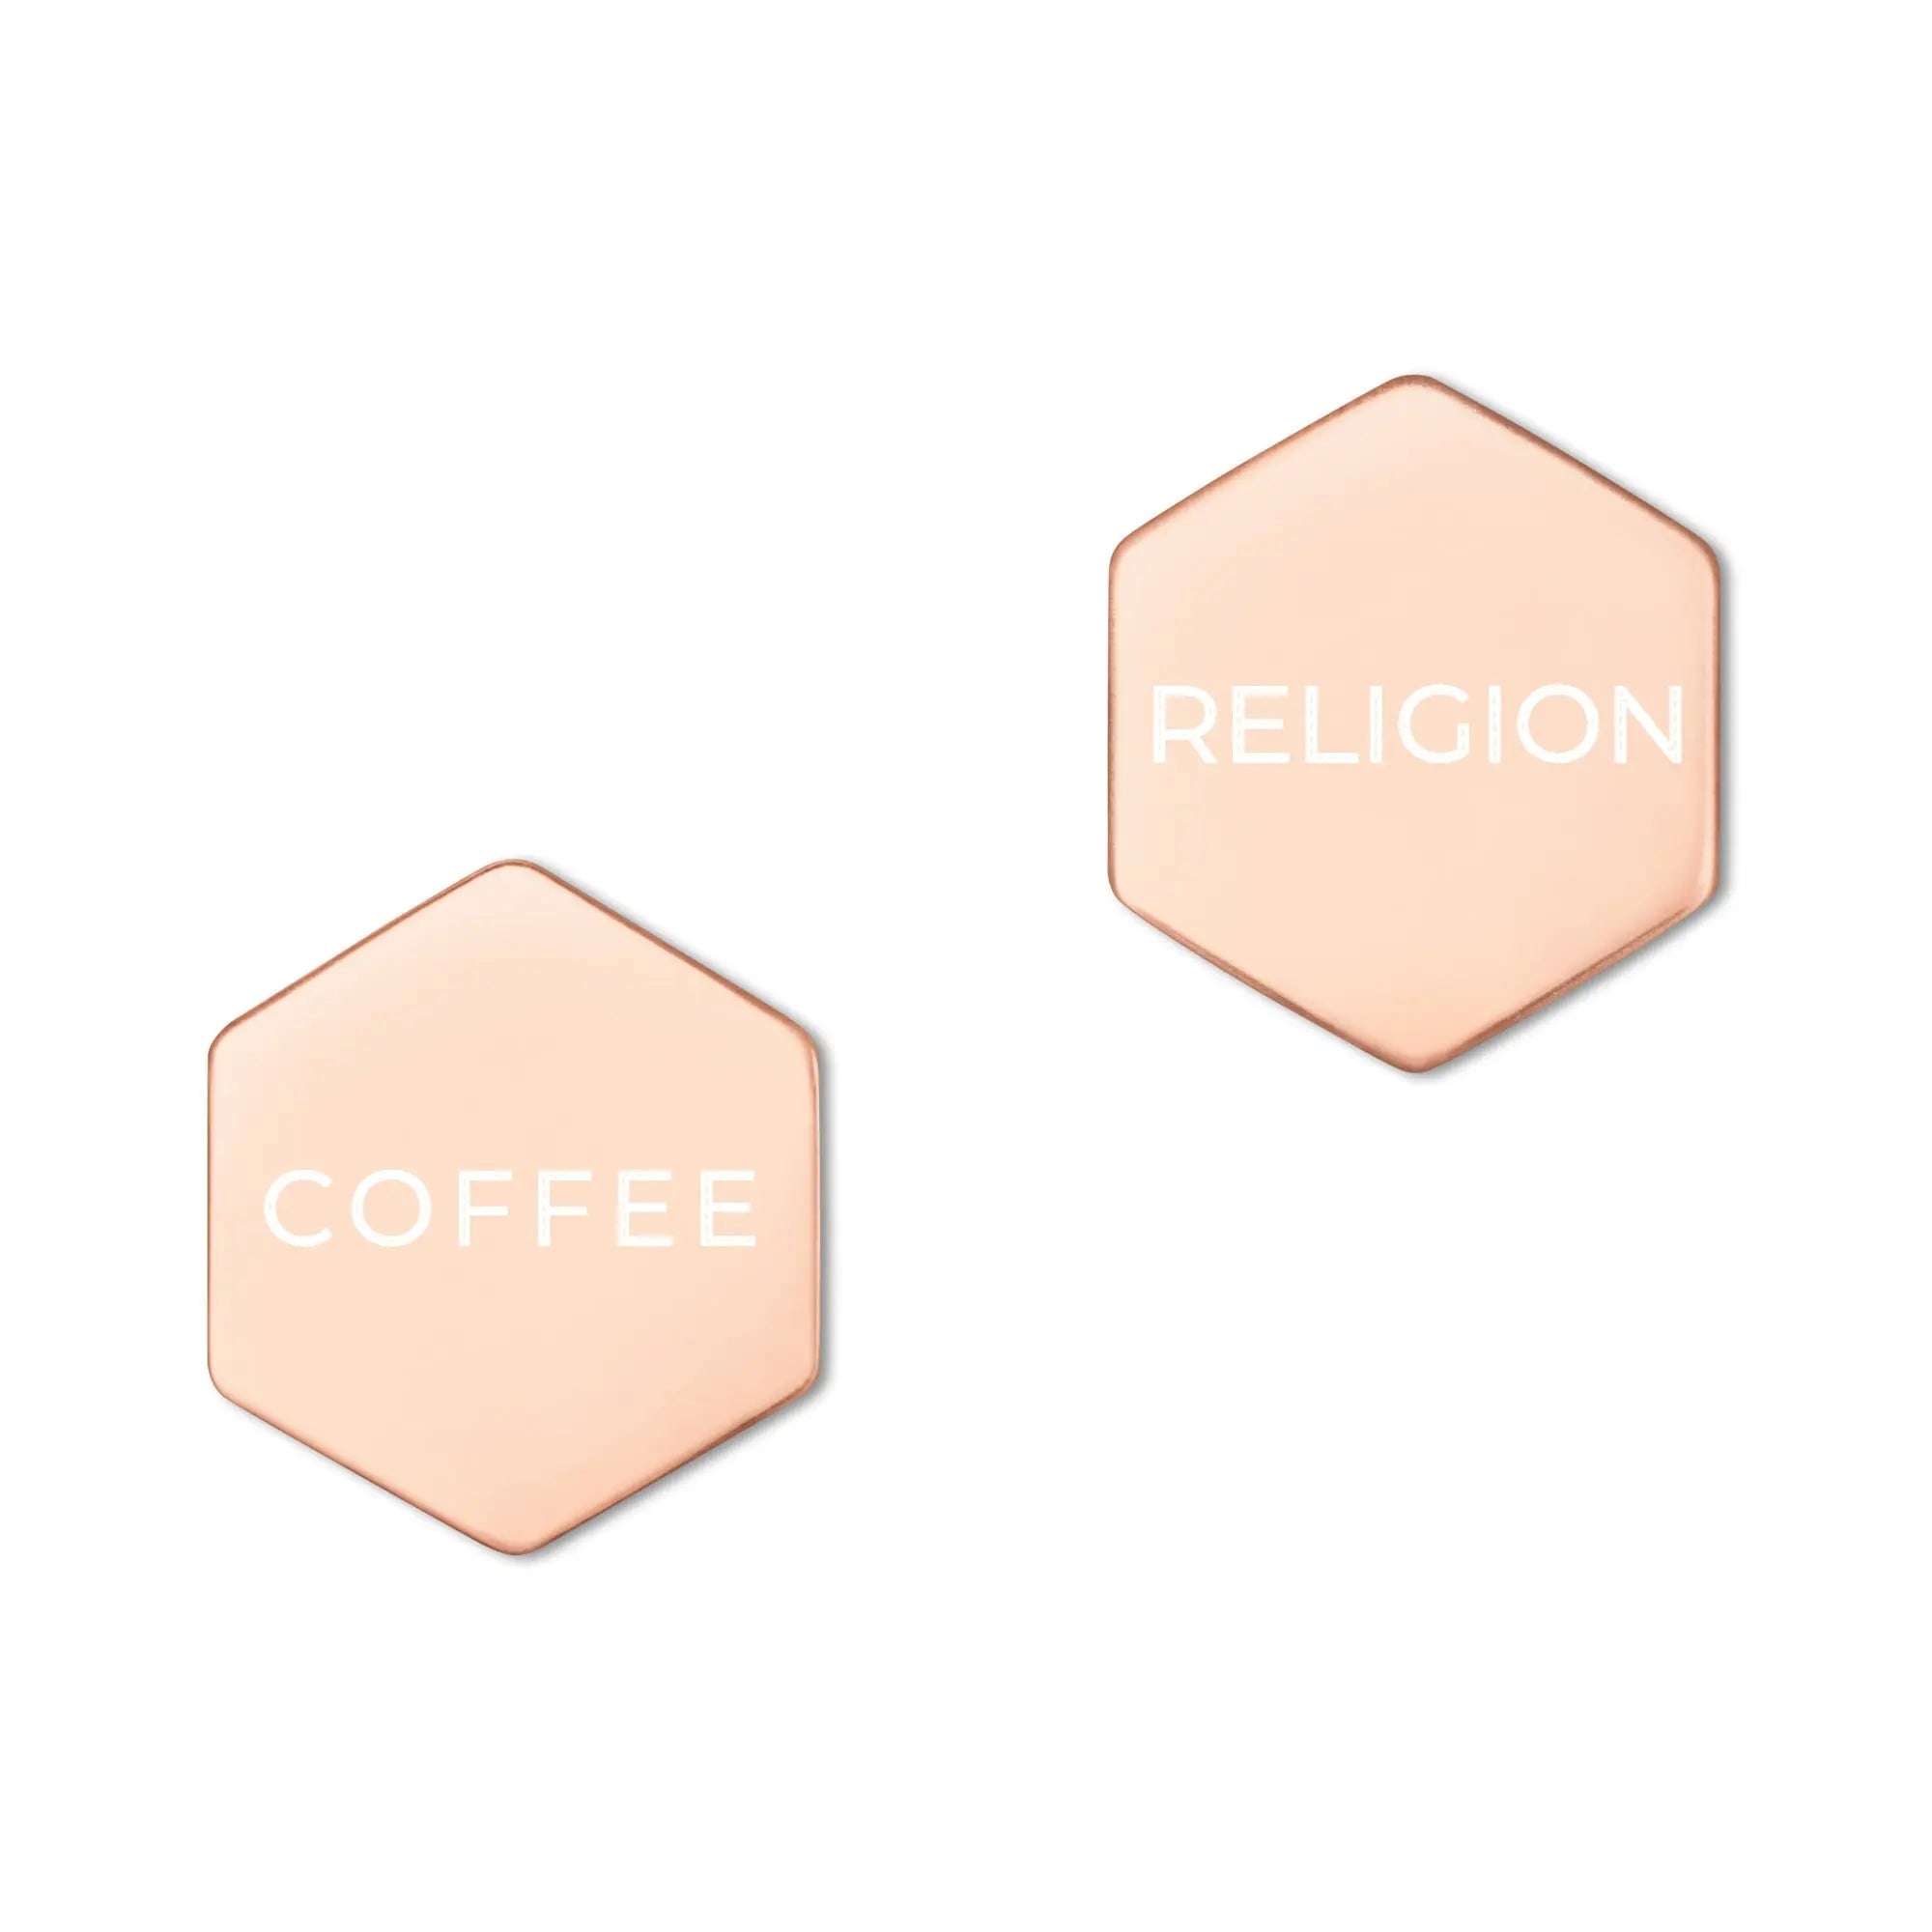 COFFEE RELIGION Earrings